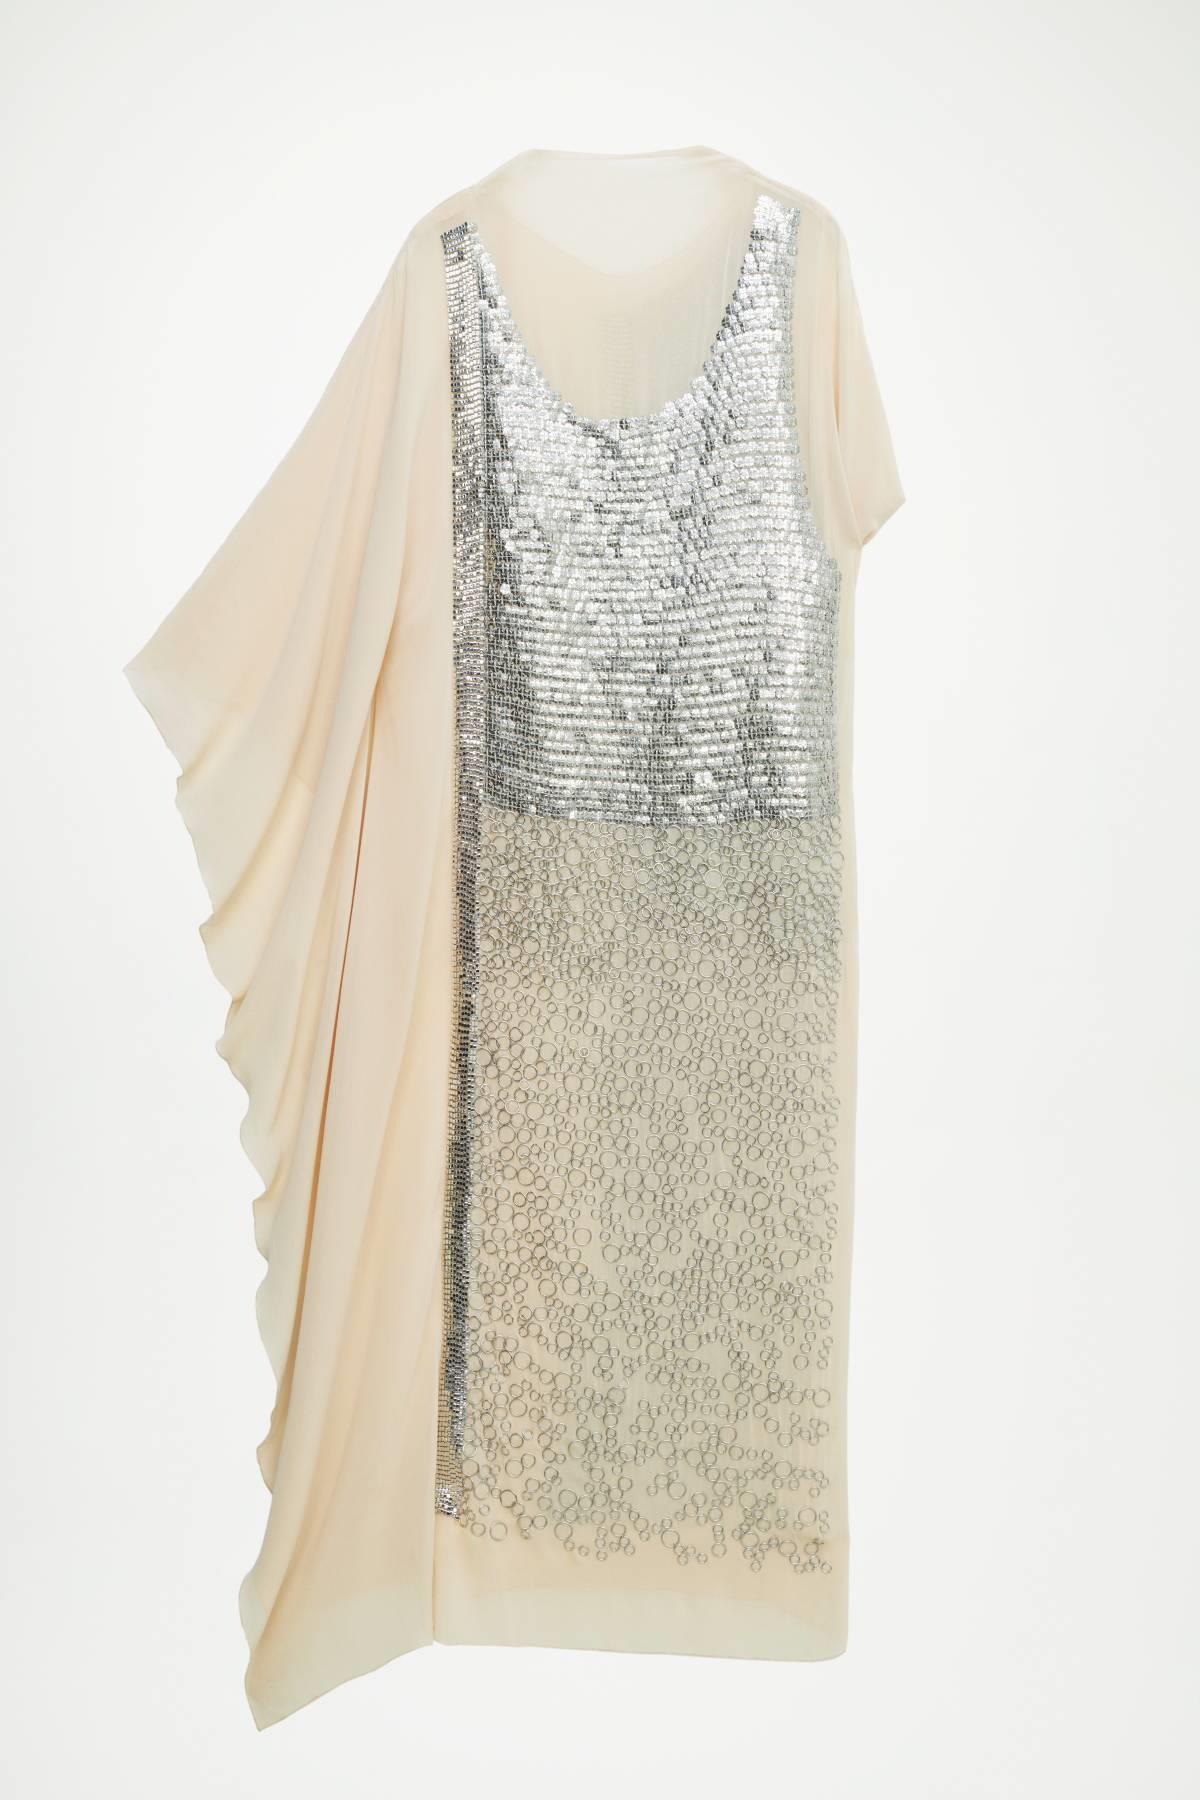 Vestido de gasa con lentejuelas, Zara Atelier